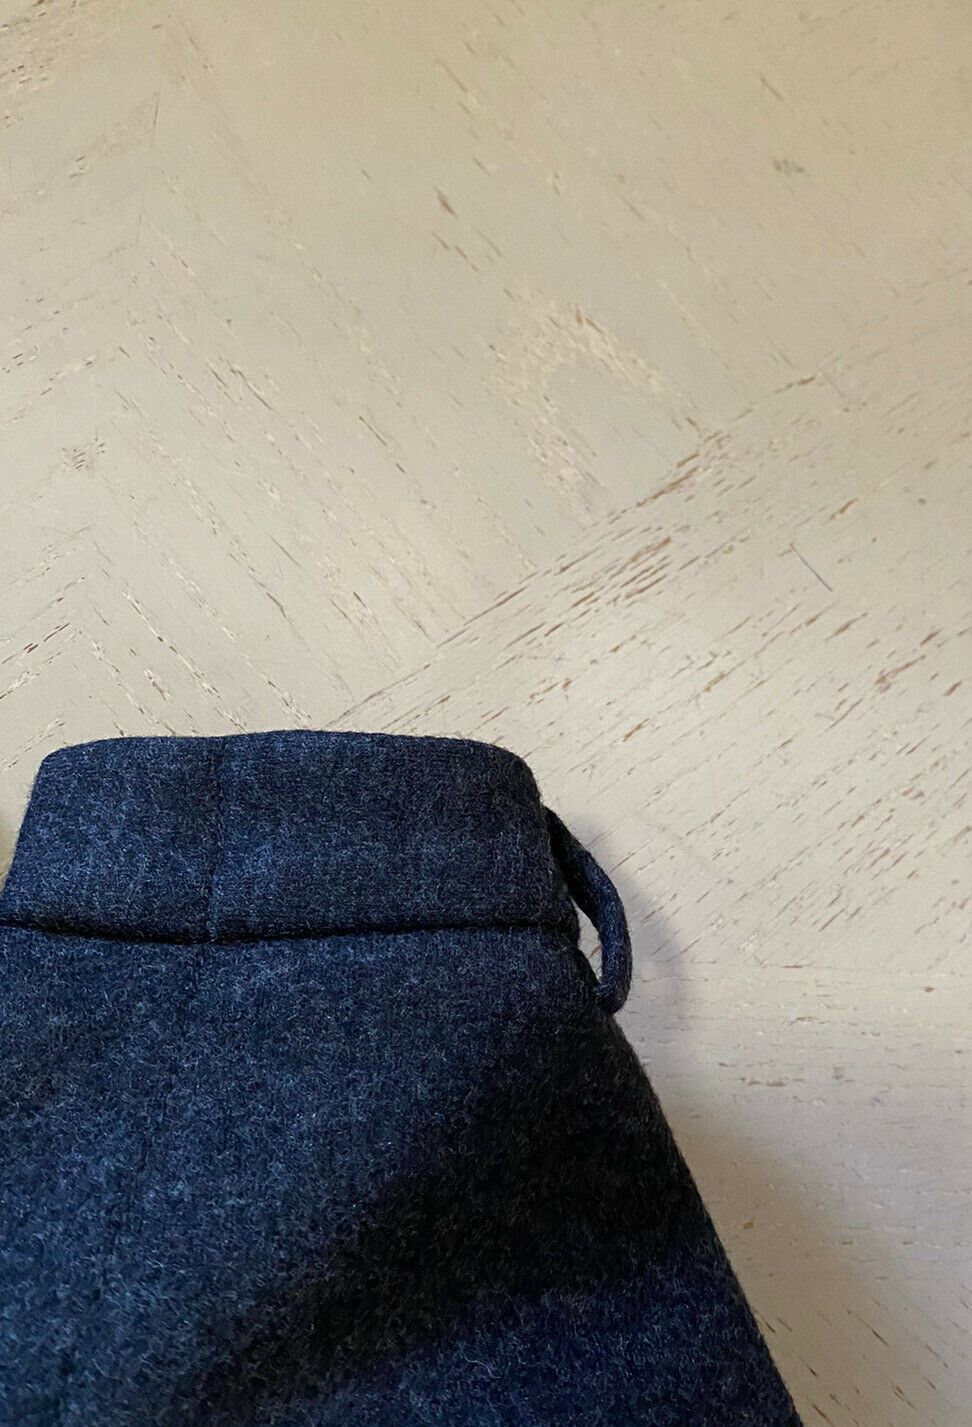 Новые мужские спортивные штаны Gucci Tom Ford, темно-серые, 34 США (50 ЕС), Италия, $1445